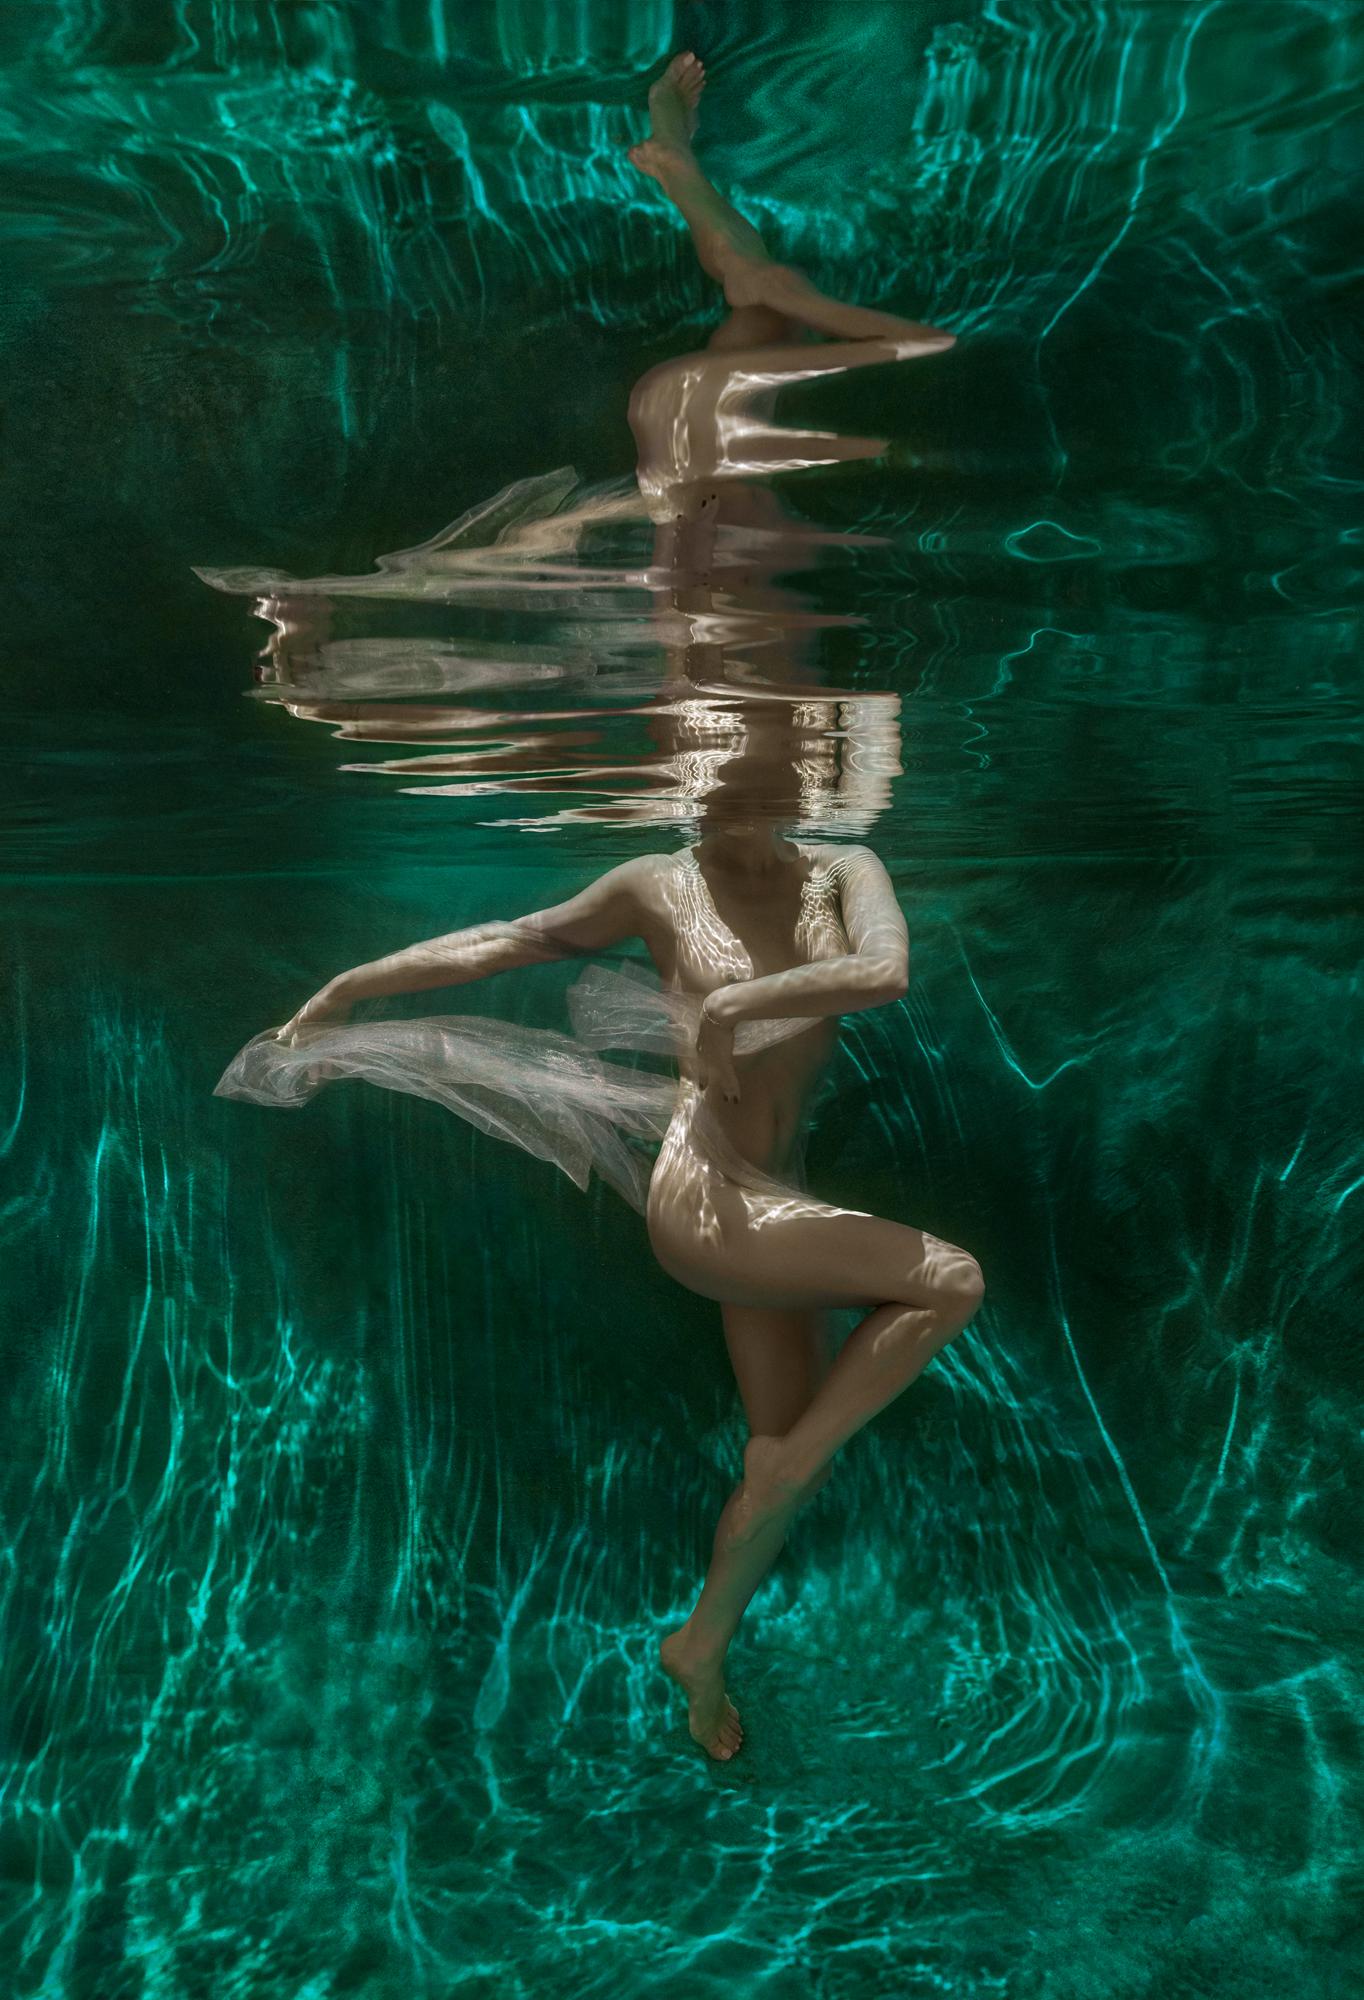 Мalachite Cave - underwater photograph - archival pigment print 51" x 35"